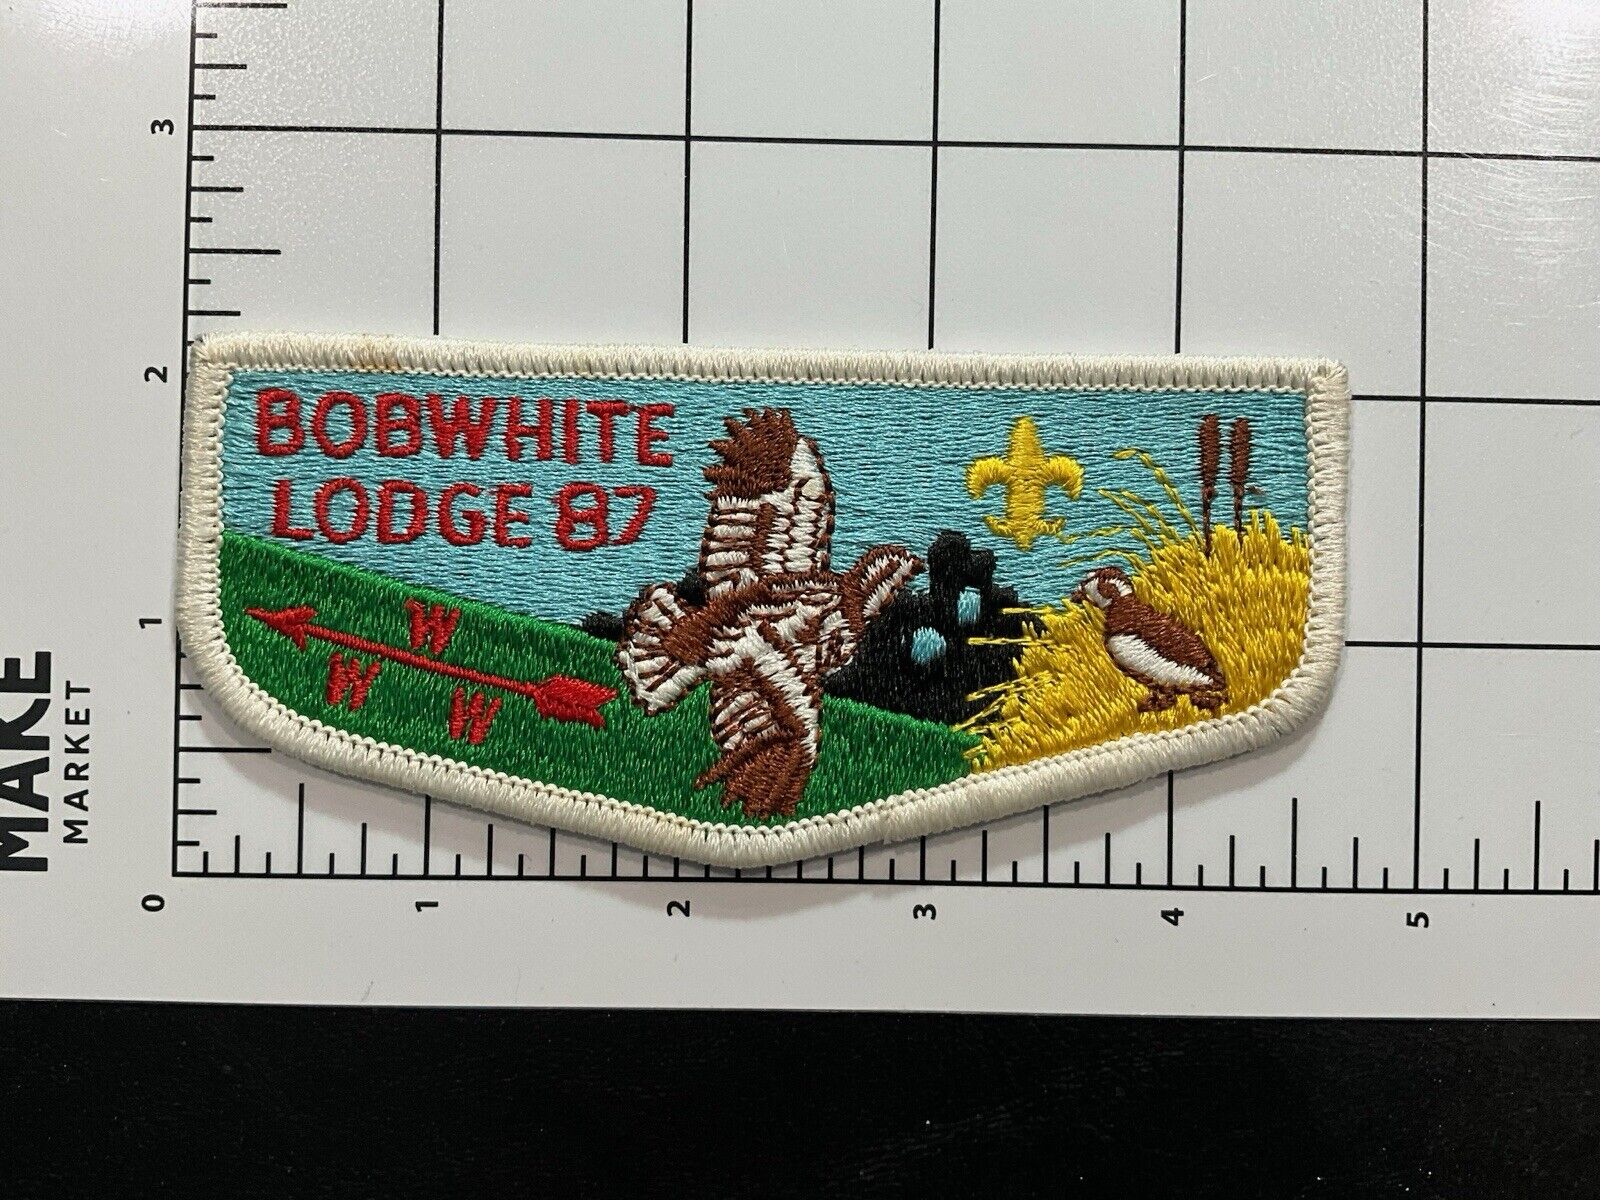 Vintage BSA Bobwhite Lodge 87 Patch